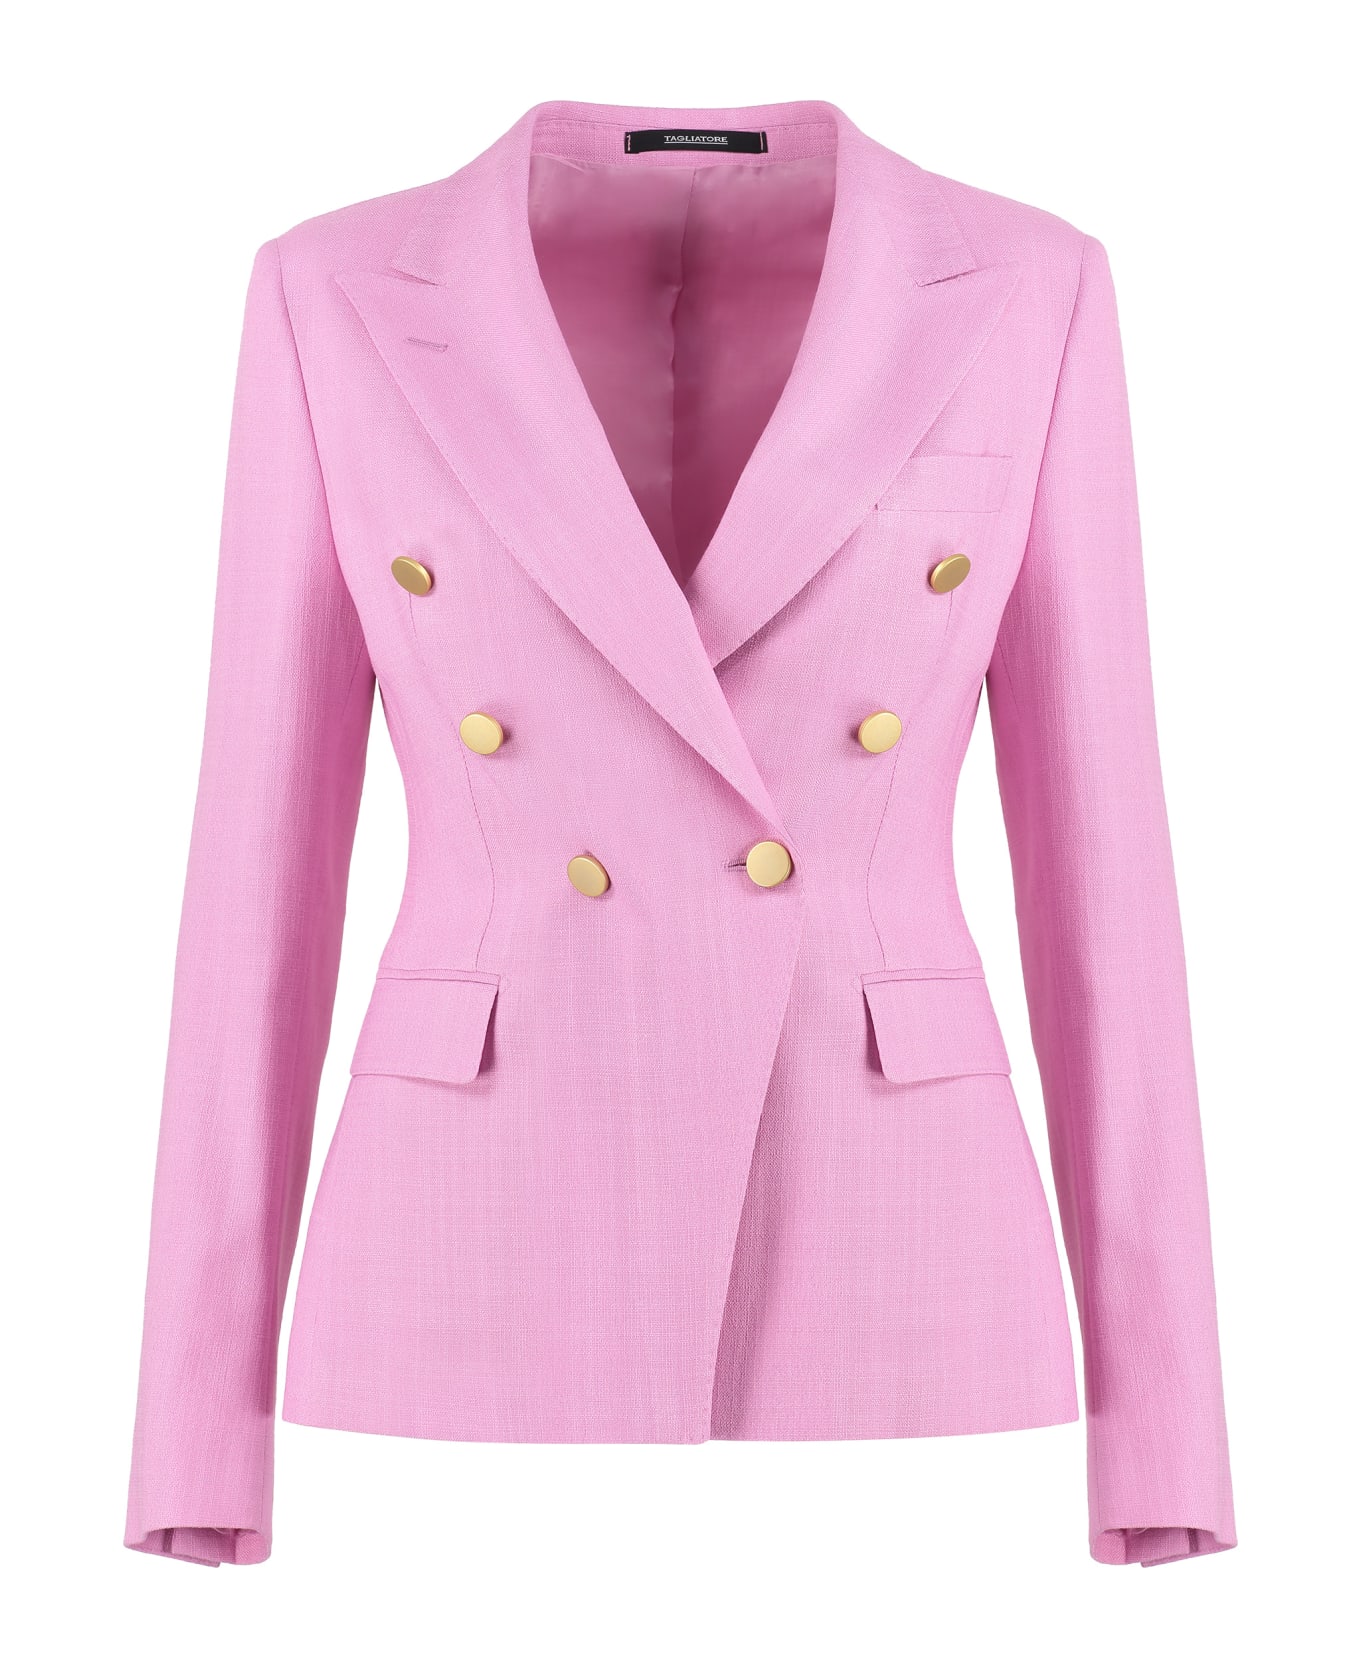 Tagliatore 0205 J-alicya Tweed Jacket - Pink